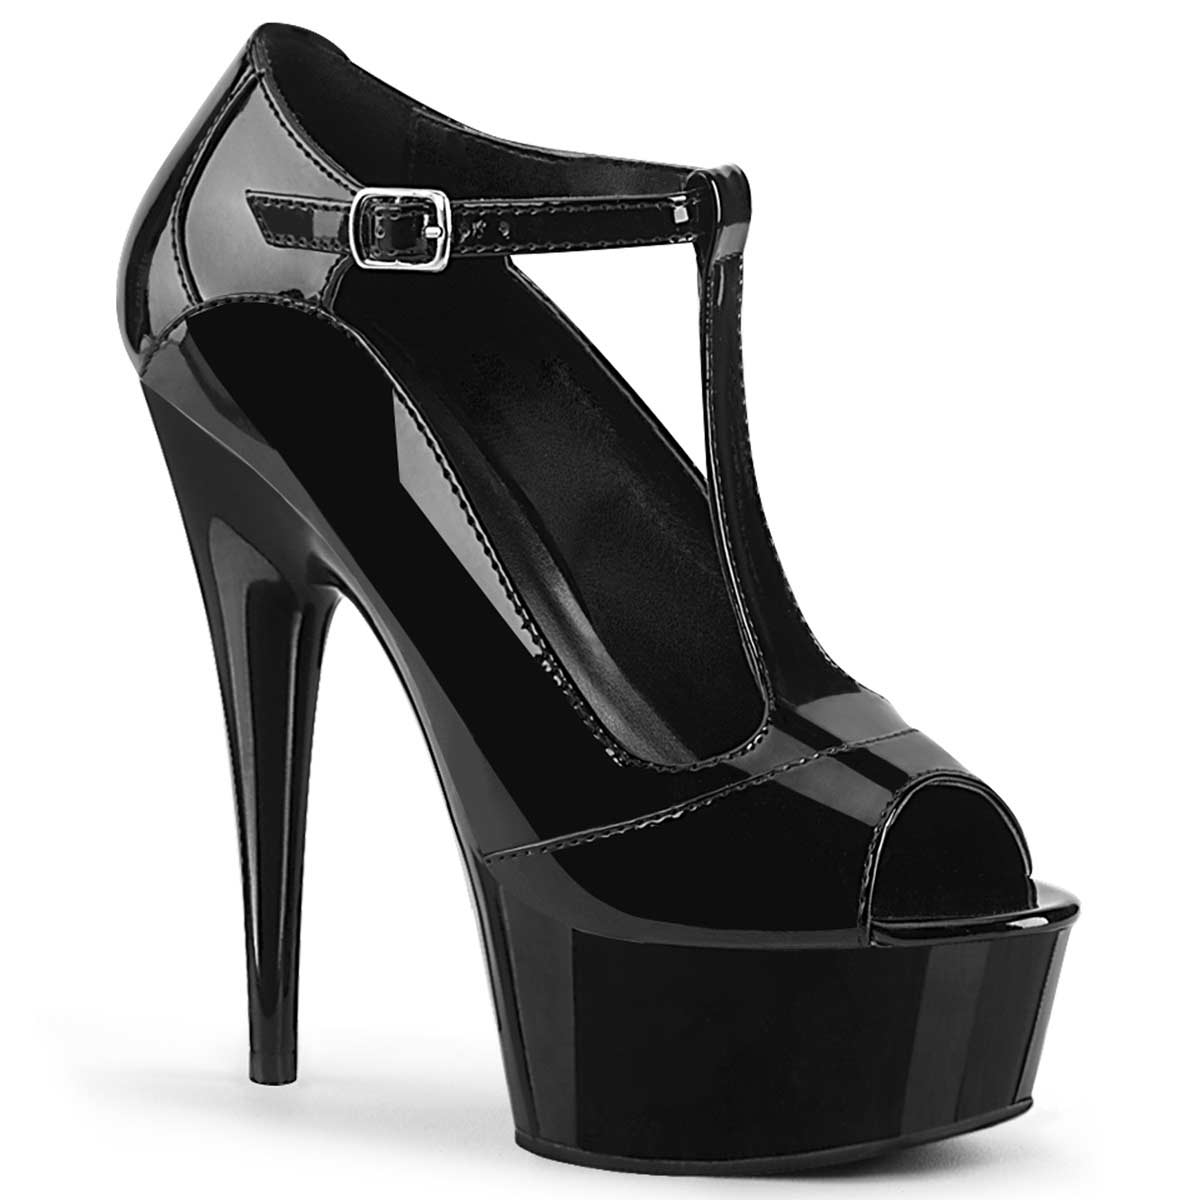 Pleaser Delight-649 - Black Patent in Sexy Heels & Platforms - $48.39